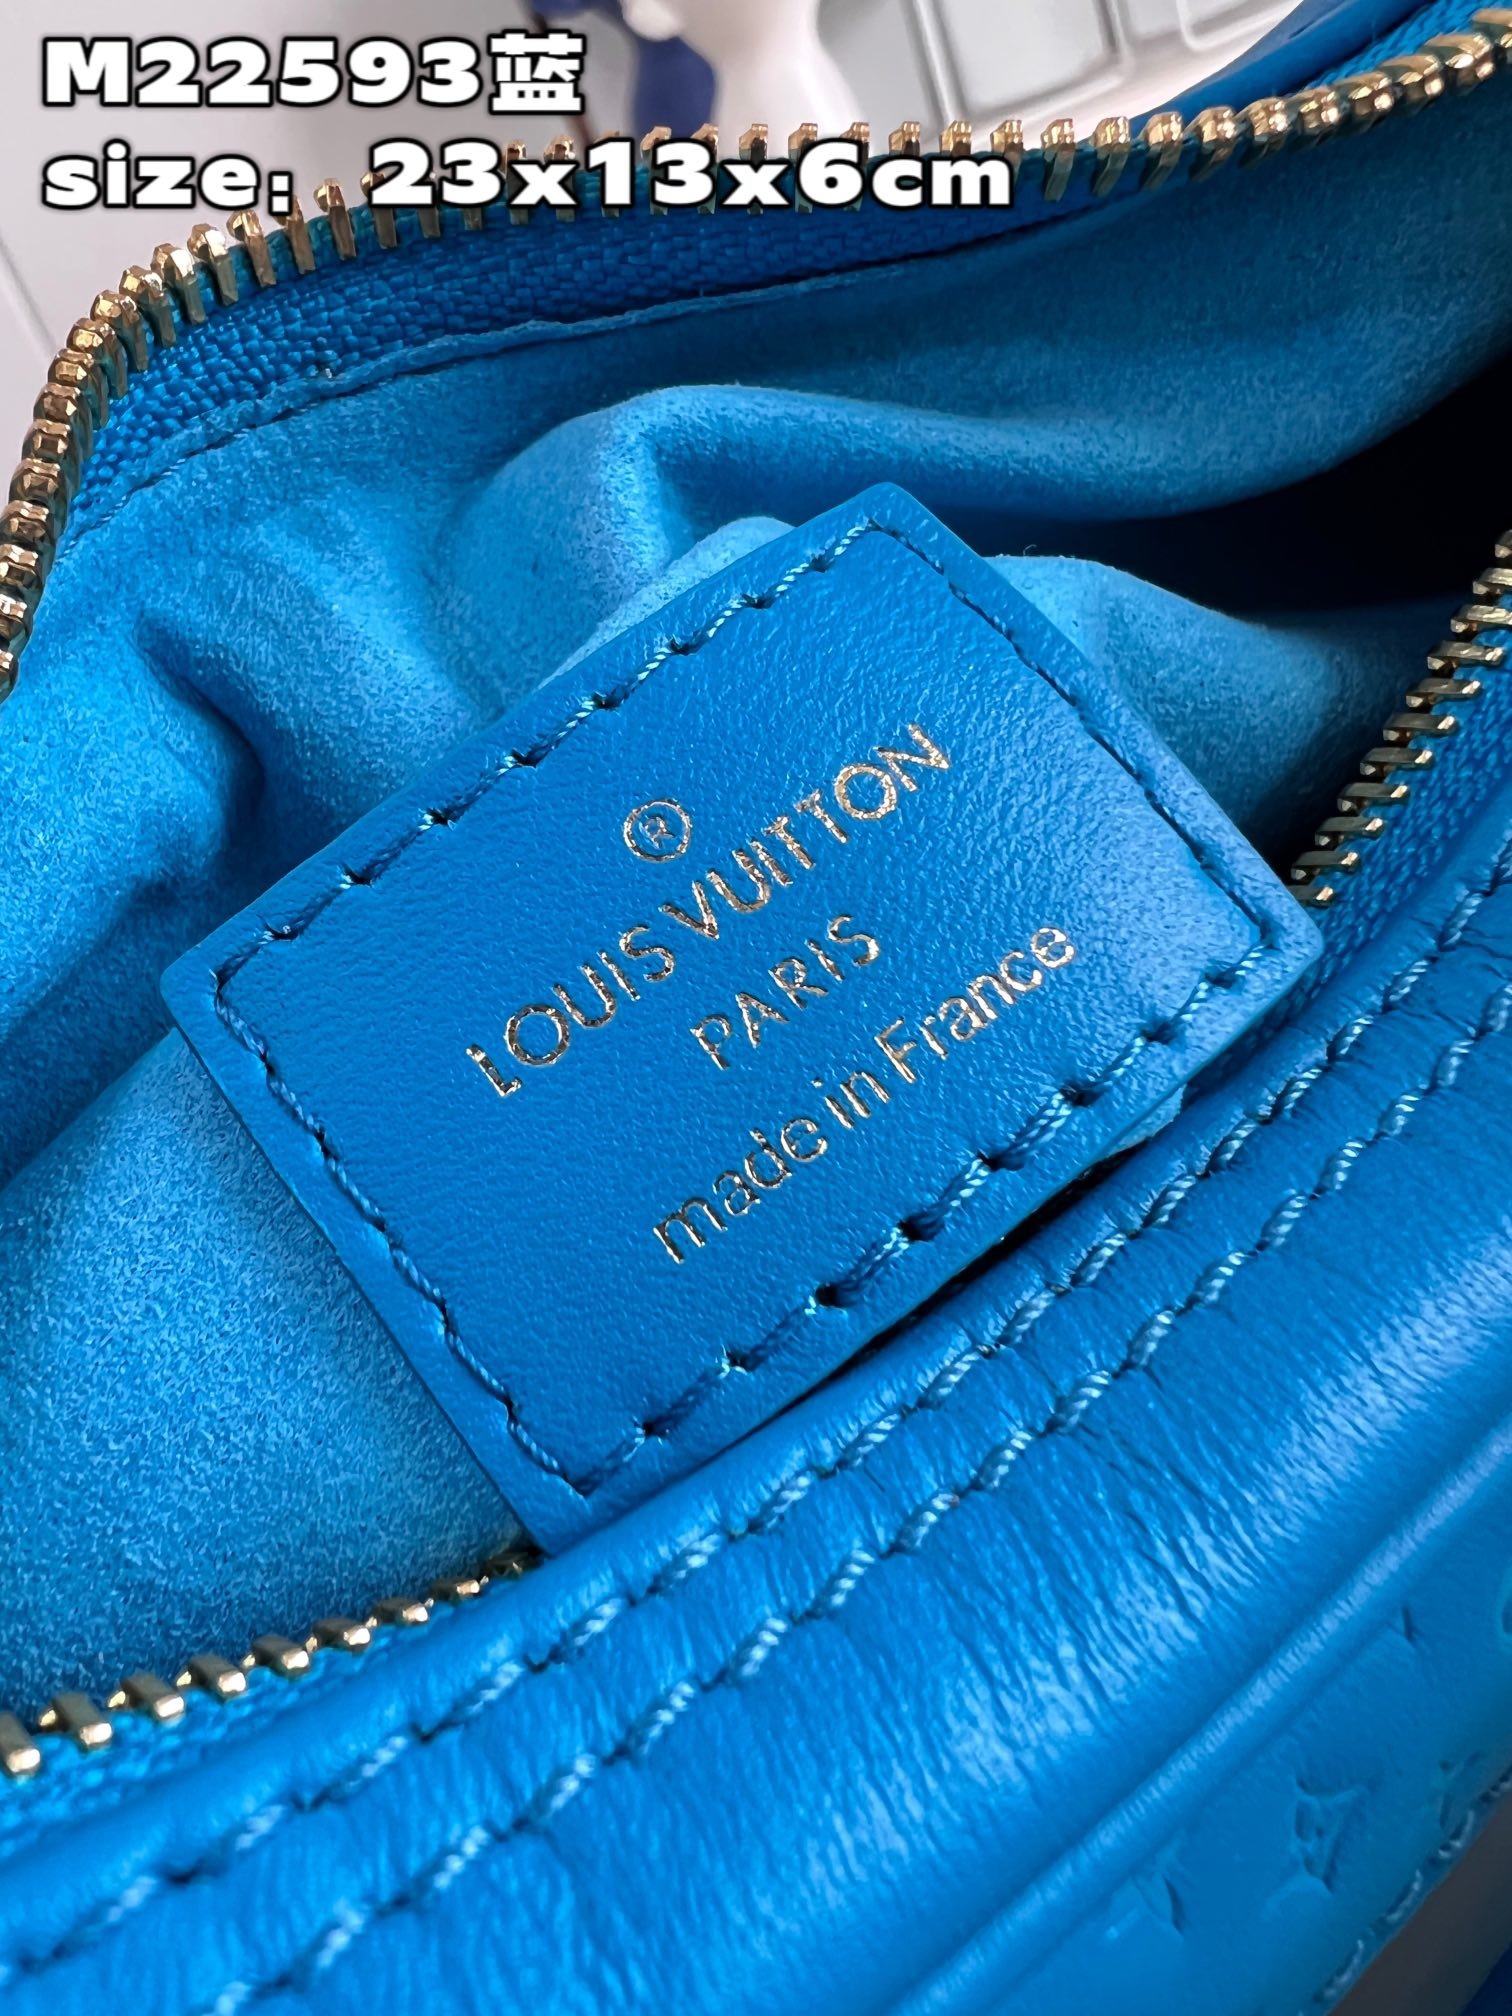 顶级原单MM22593蓝由牛皮革制成的Loop手袋饰有微缩版Monogram花纹彩色丝印LV字母标识和M